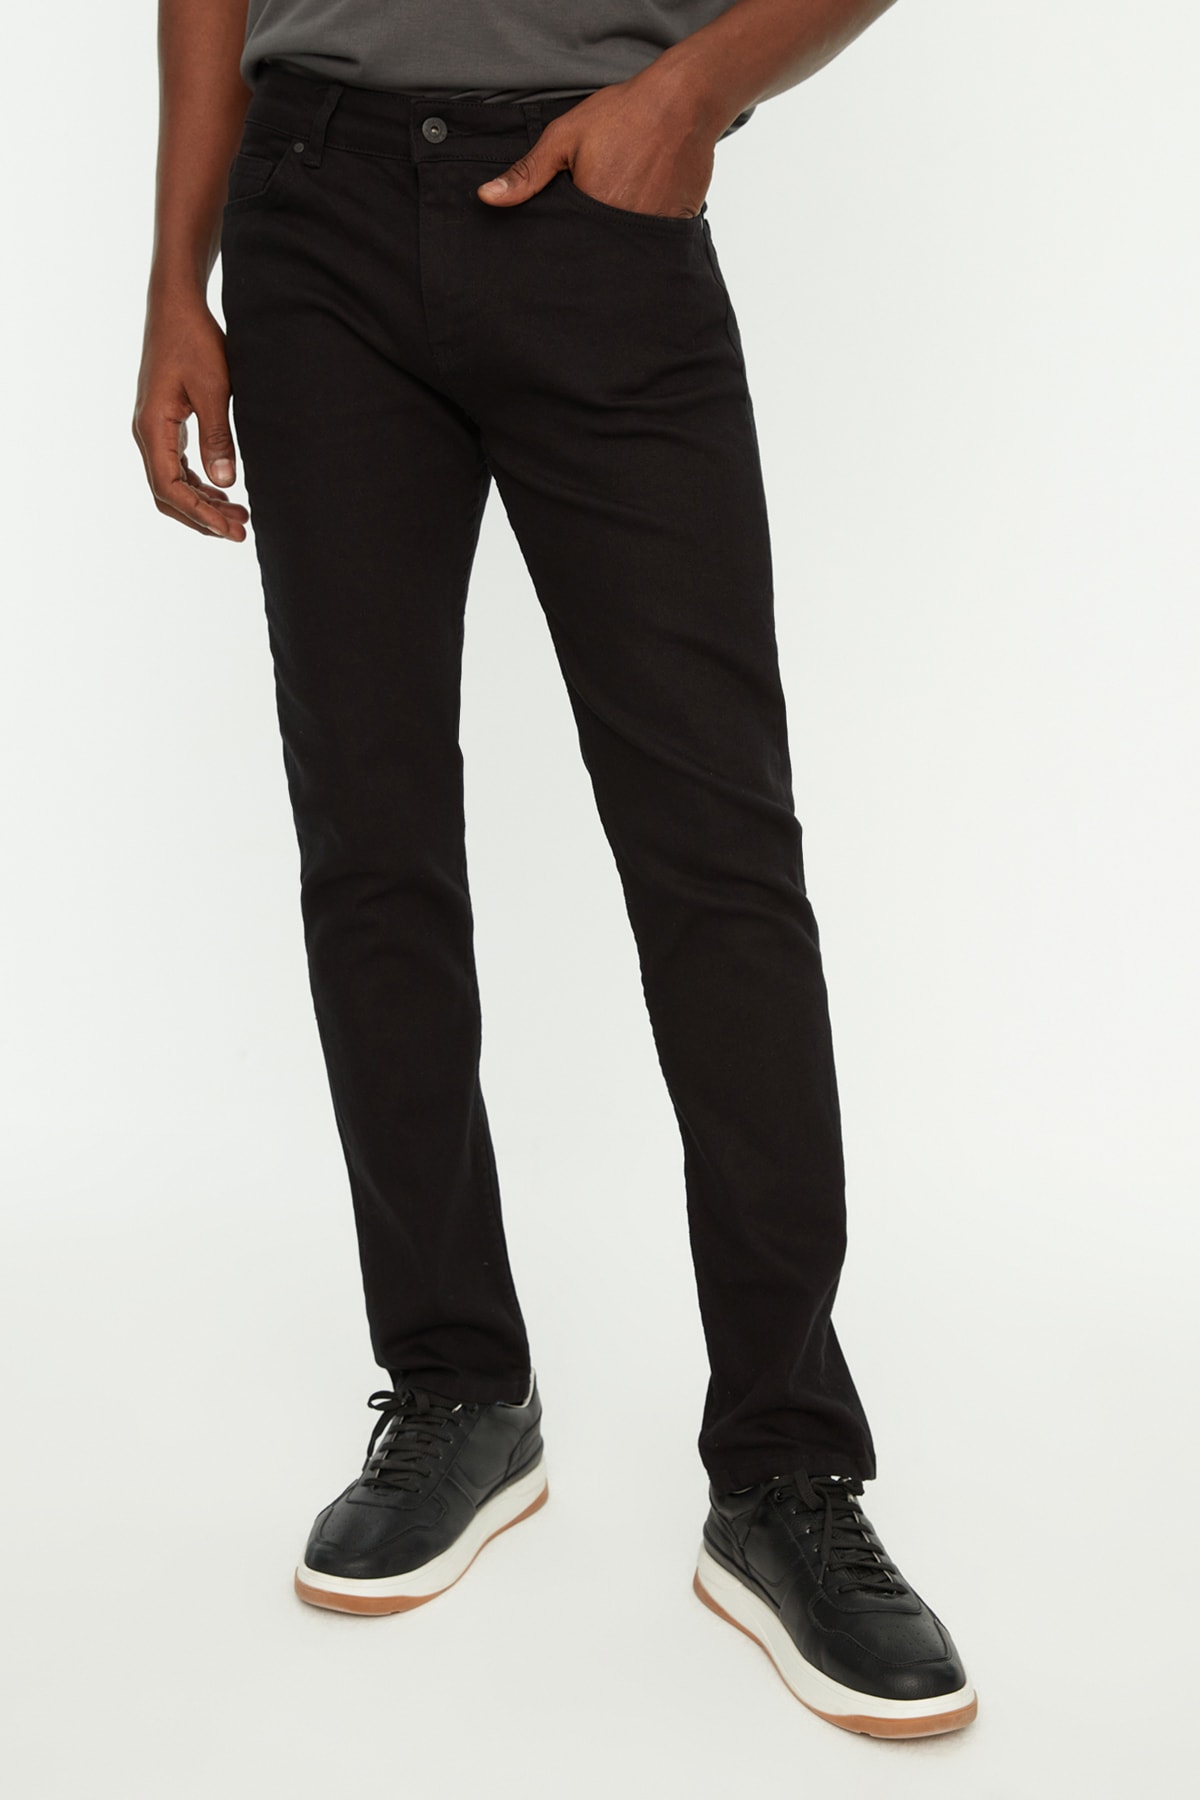 Джинсы Trendyol скинни из нелиняющего материала, черный джинсы скинни размер 27 черный